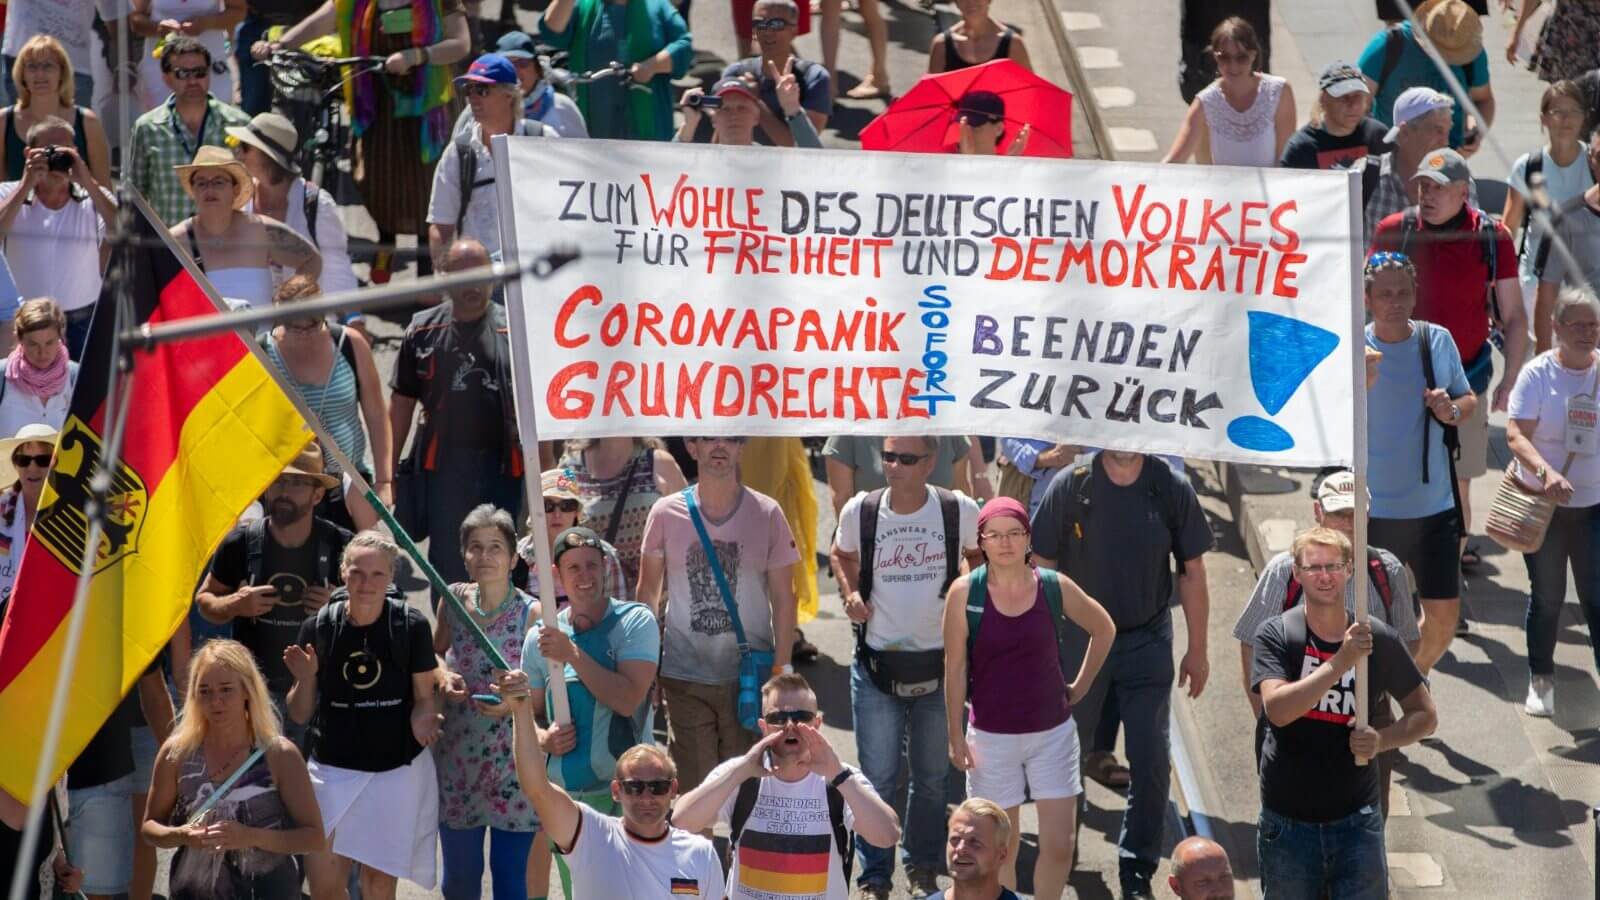 Am vergangenen Samstag fanden in Berlin Proteste gegen die Corona-Maßnahmen statt. In Sozialen Netzwerken kursieren viele falsche Behauptungen über die Anzahl der Teilnehmer.